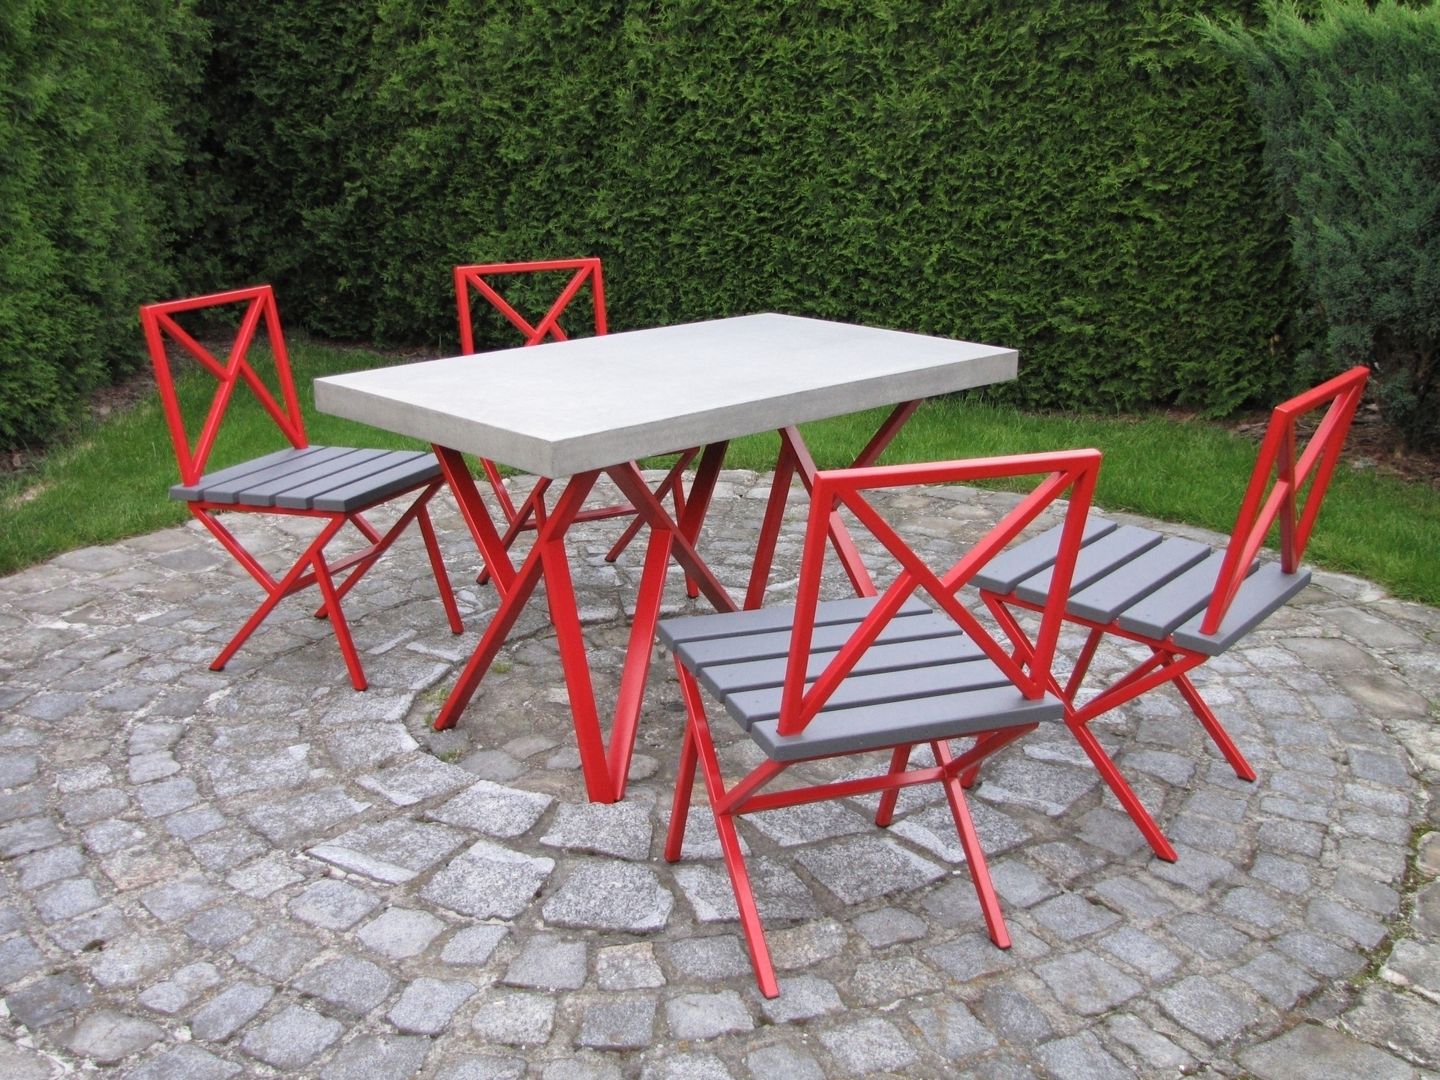 Ogrodowe stoły, krzesła, komplety, Stańczyk Konstrukcje Stańczyk Konstrukcje Modern Bahçe Mobilyalar